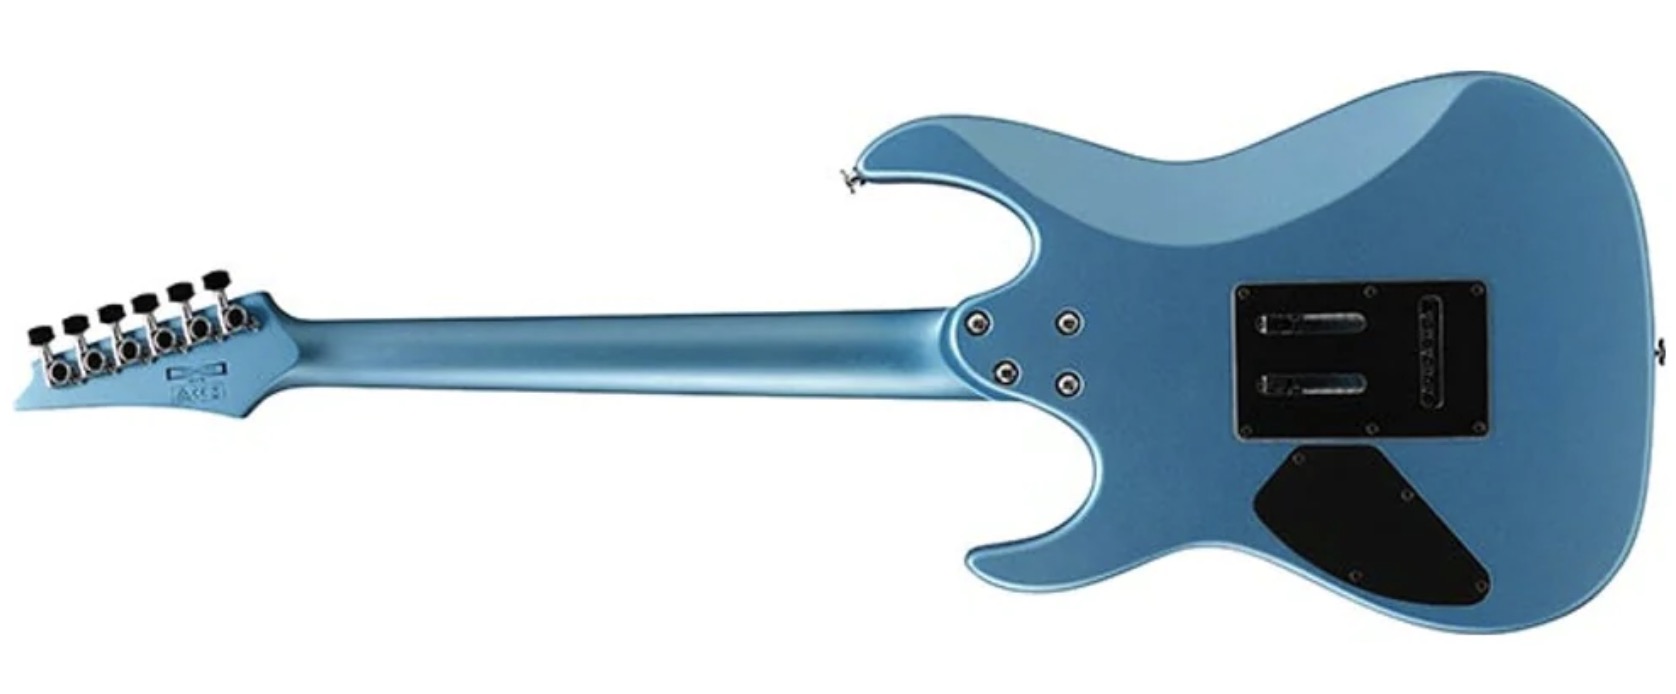 Ibanez GRX120SP MLM Electrische gitaar